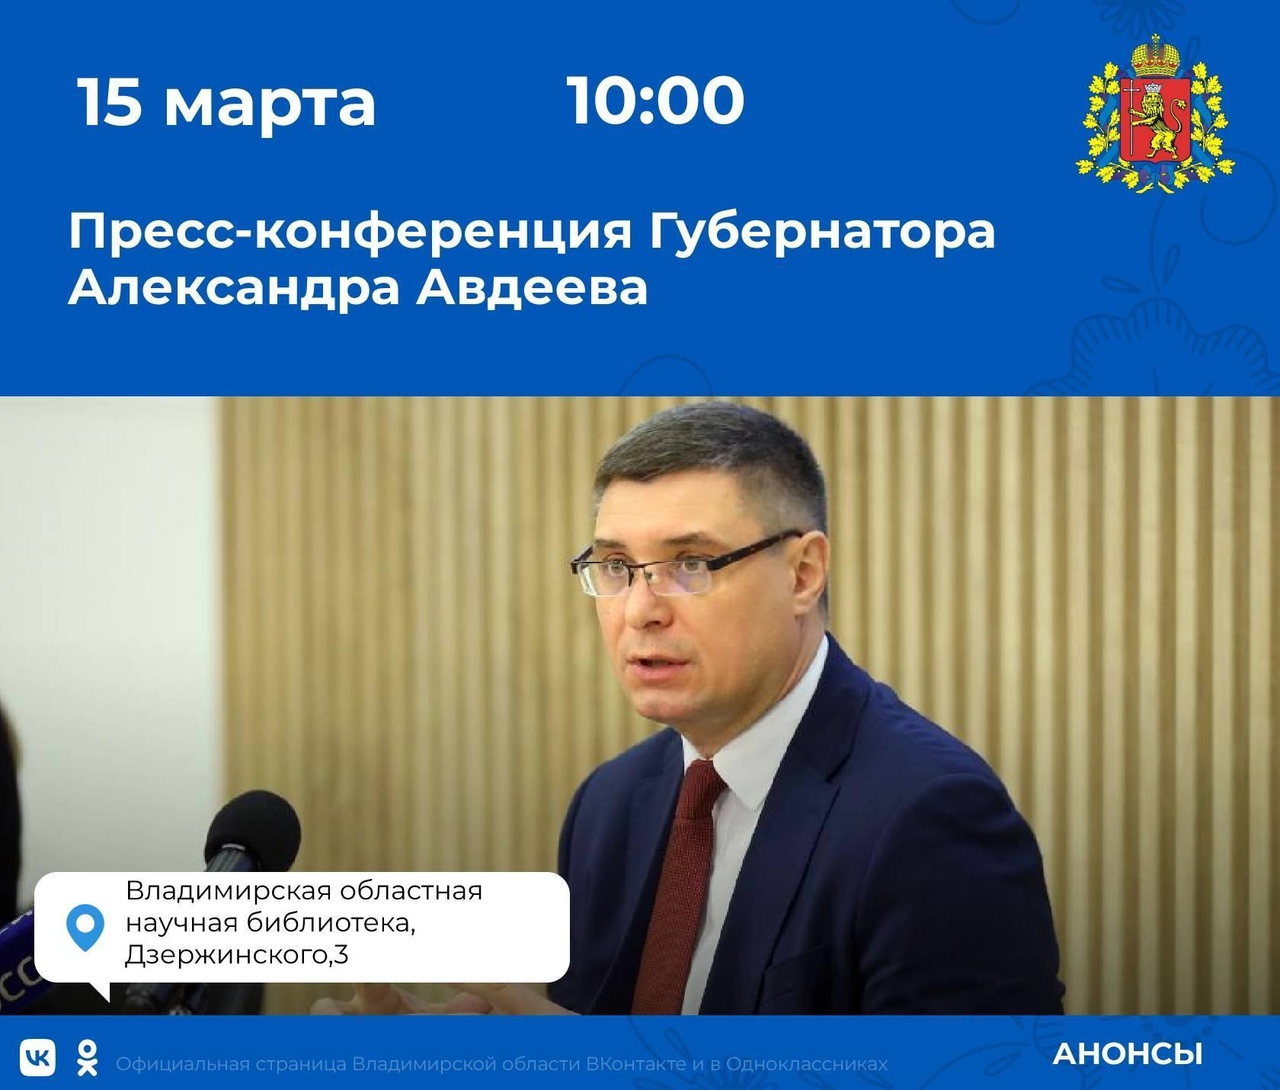 15 марта состоится пресс-конференция Александра Авдеева